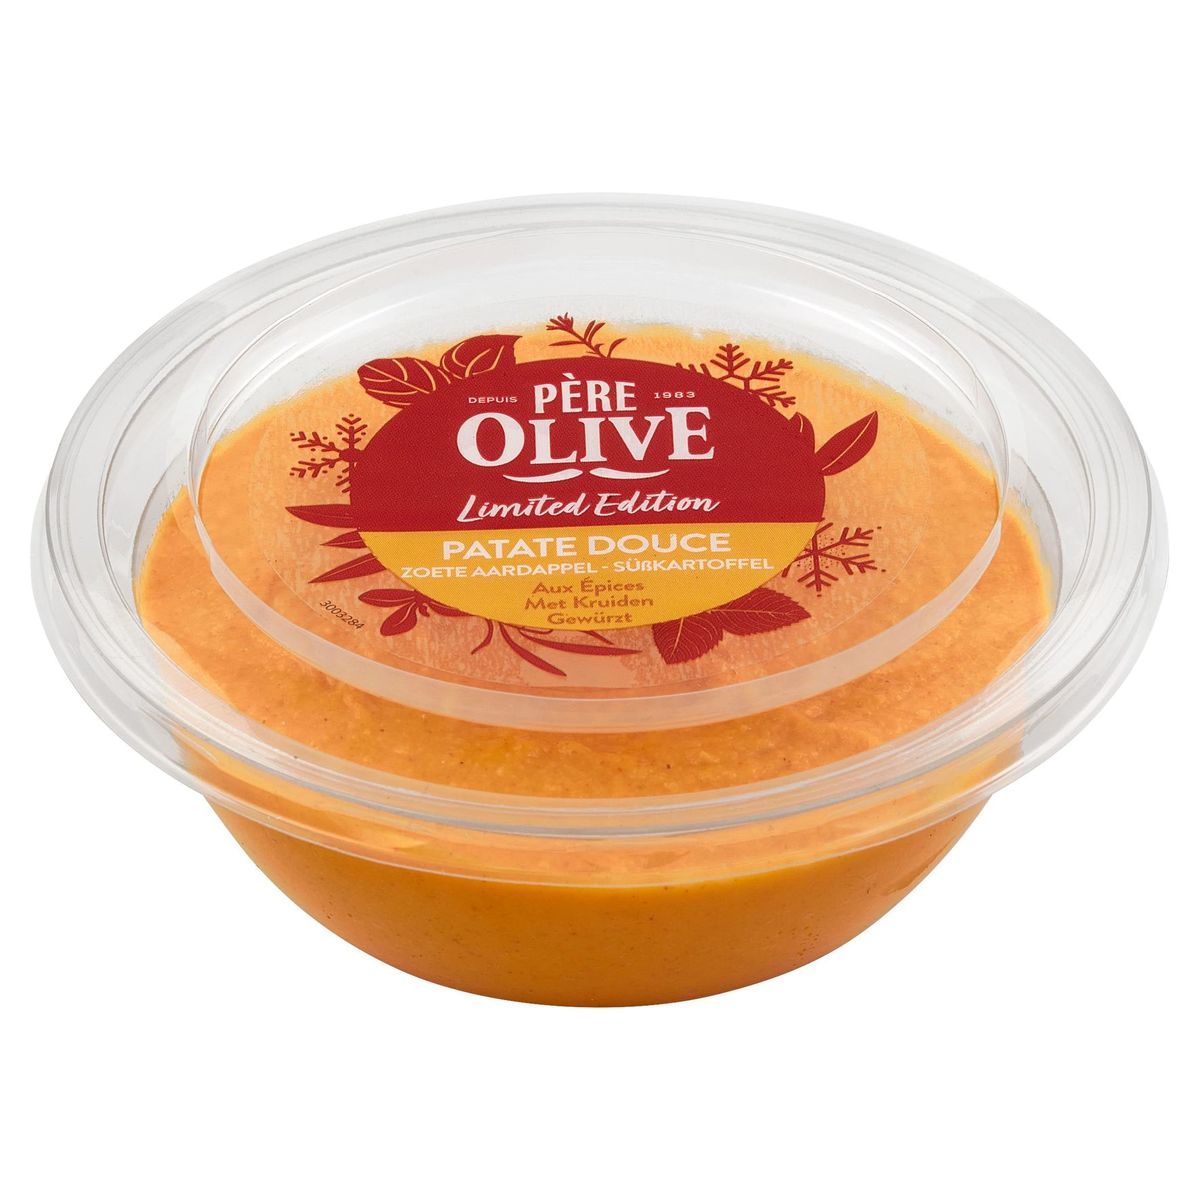 Père Olive Patate Douce aux Épices Limited Edition 175 g